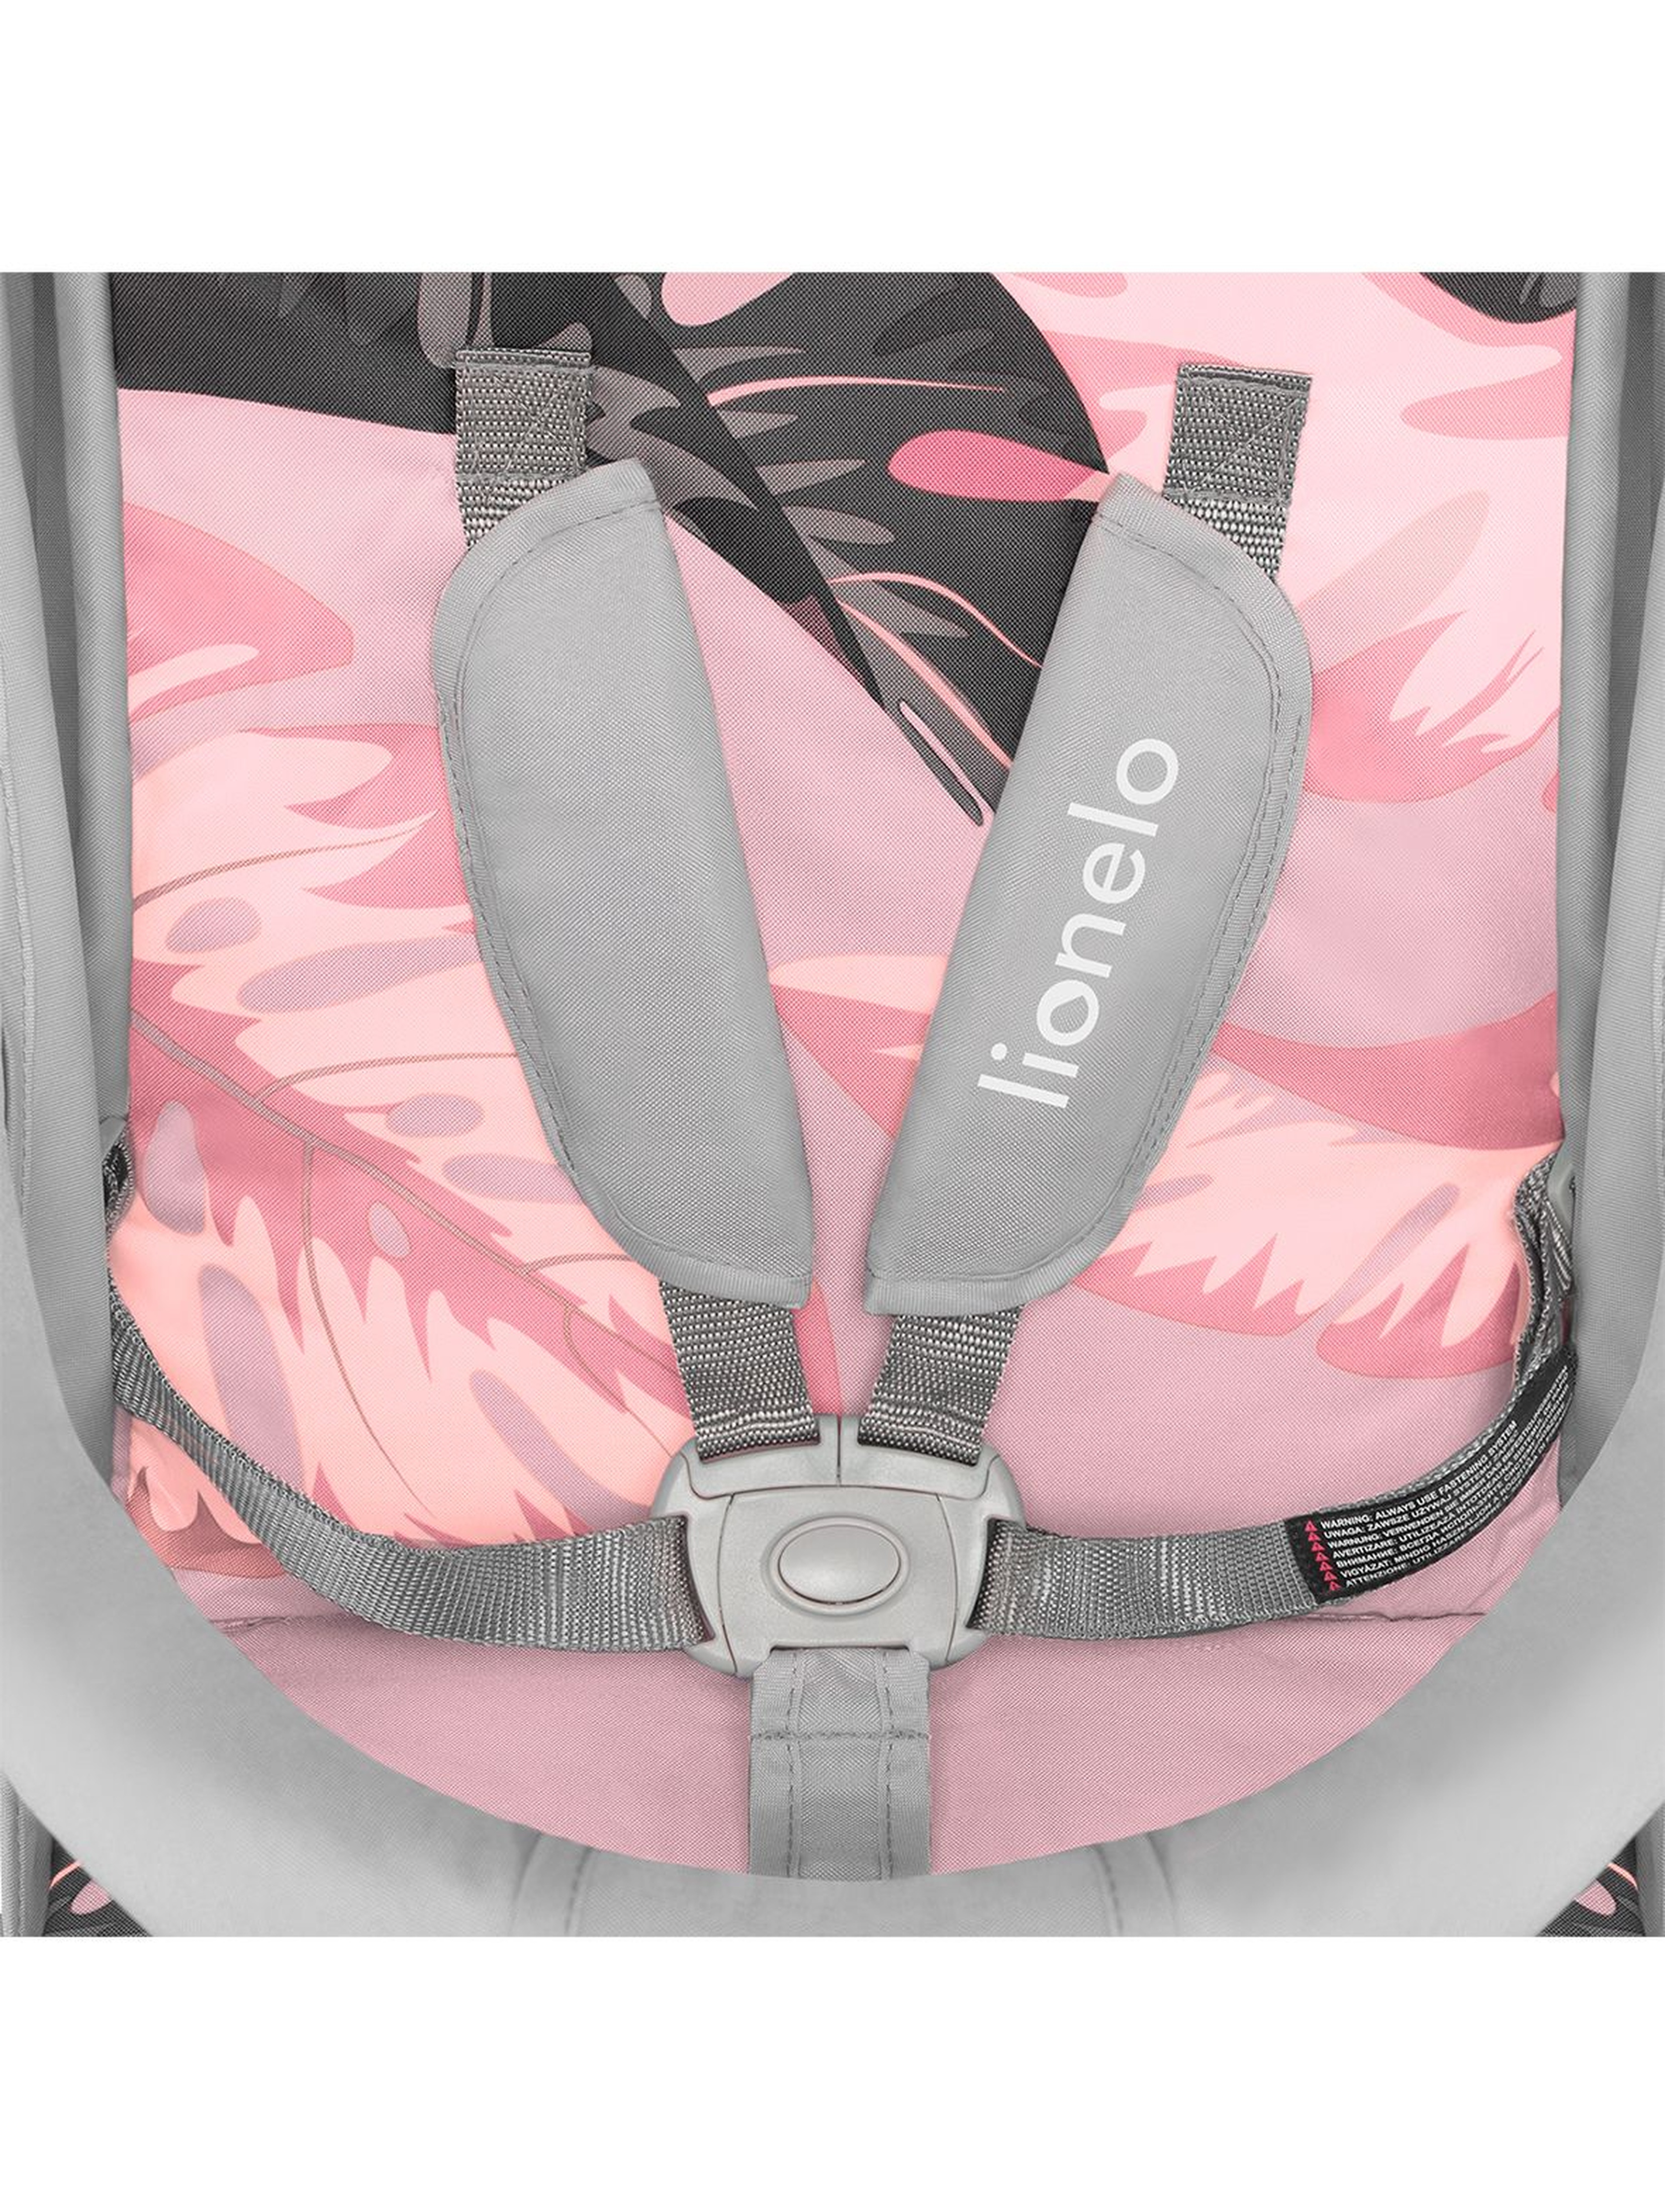 Wózek spacerowy Lionelo Tropical - różowy